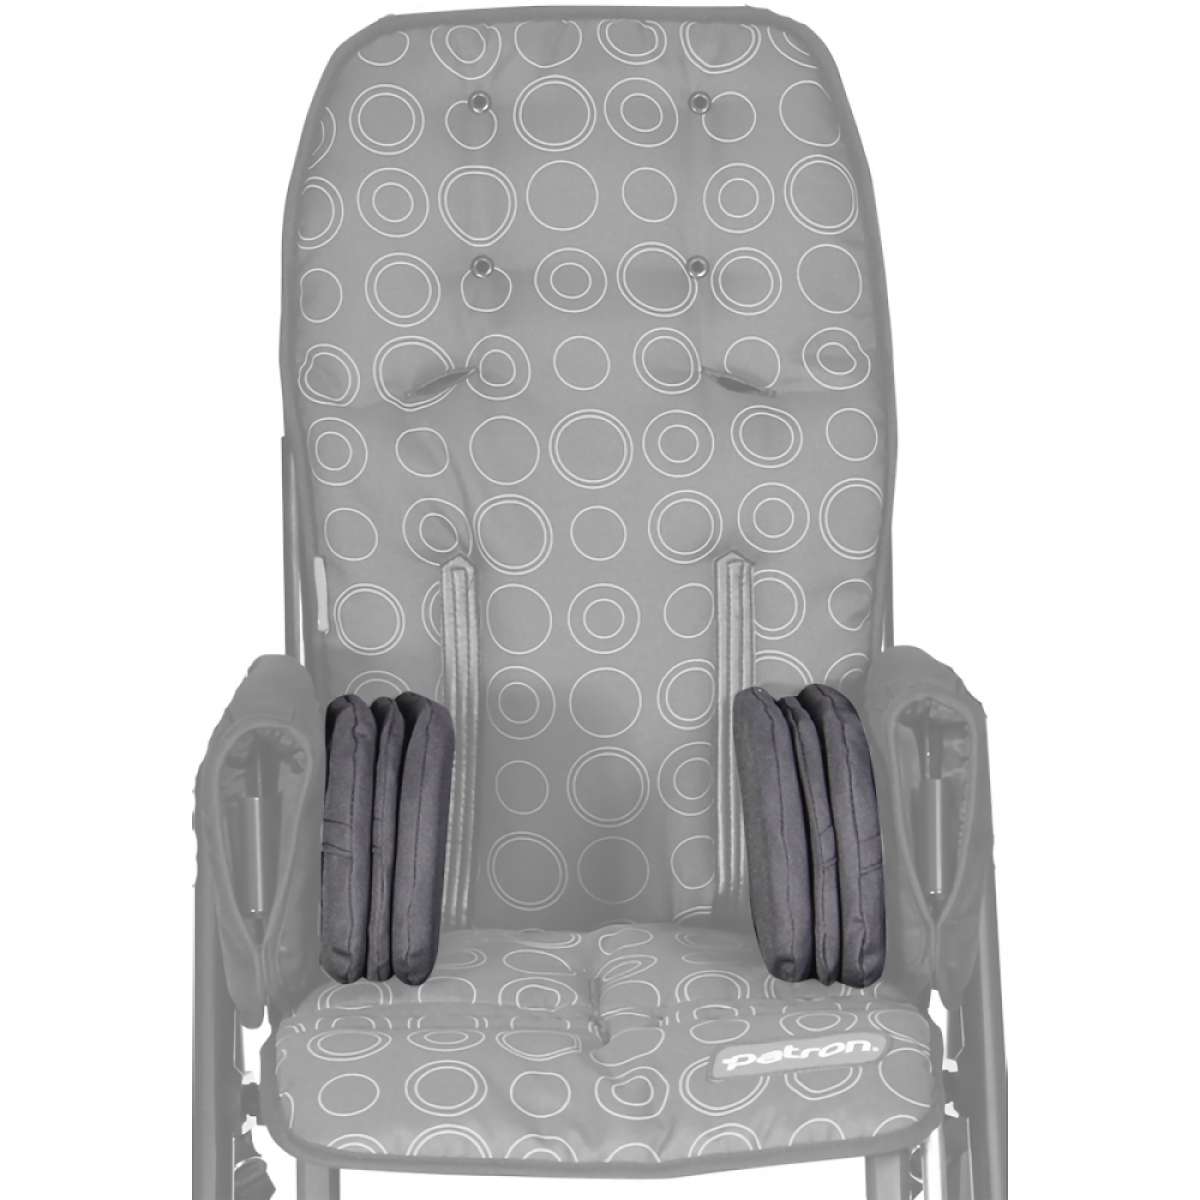 Подушечки для регулировки ширины сидения для колясок Patron Rprk033 